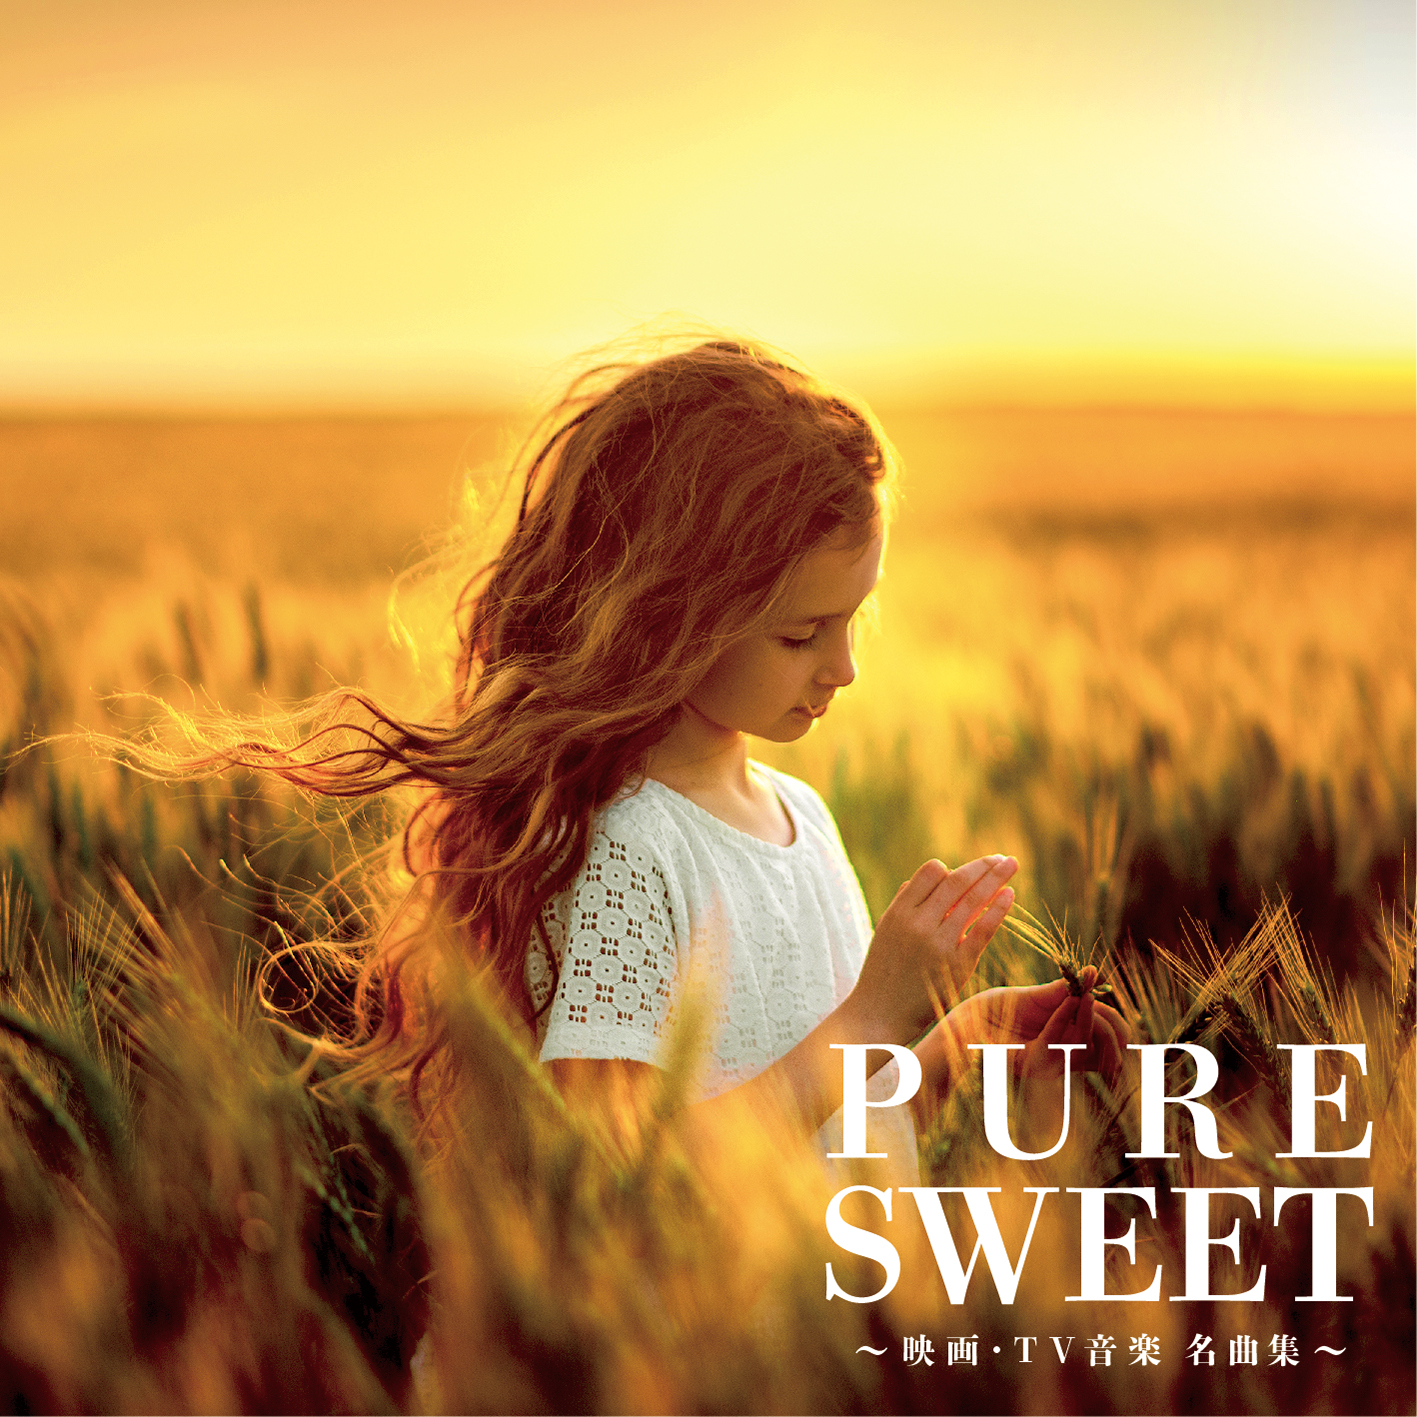 映画 Tv音楽の名曲を厳選 収録した豪華コンピレーションcd Pure Sweet 映画 Tv音楽 名曲 集 発売 株式会社ハッツアンリミテッドのプレスリリース